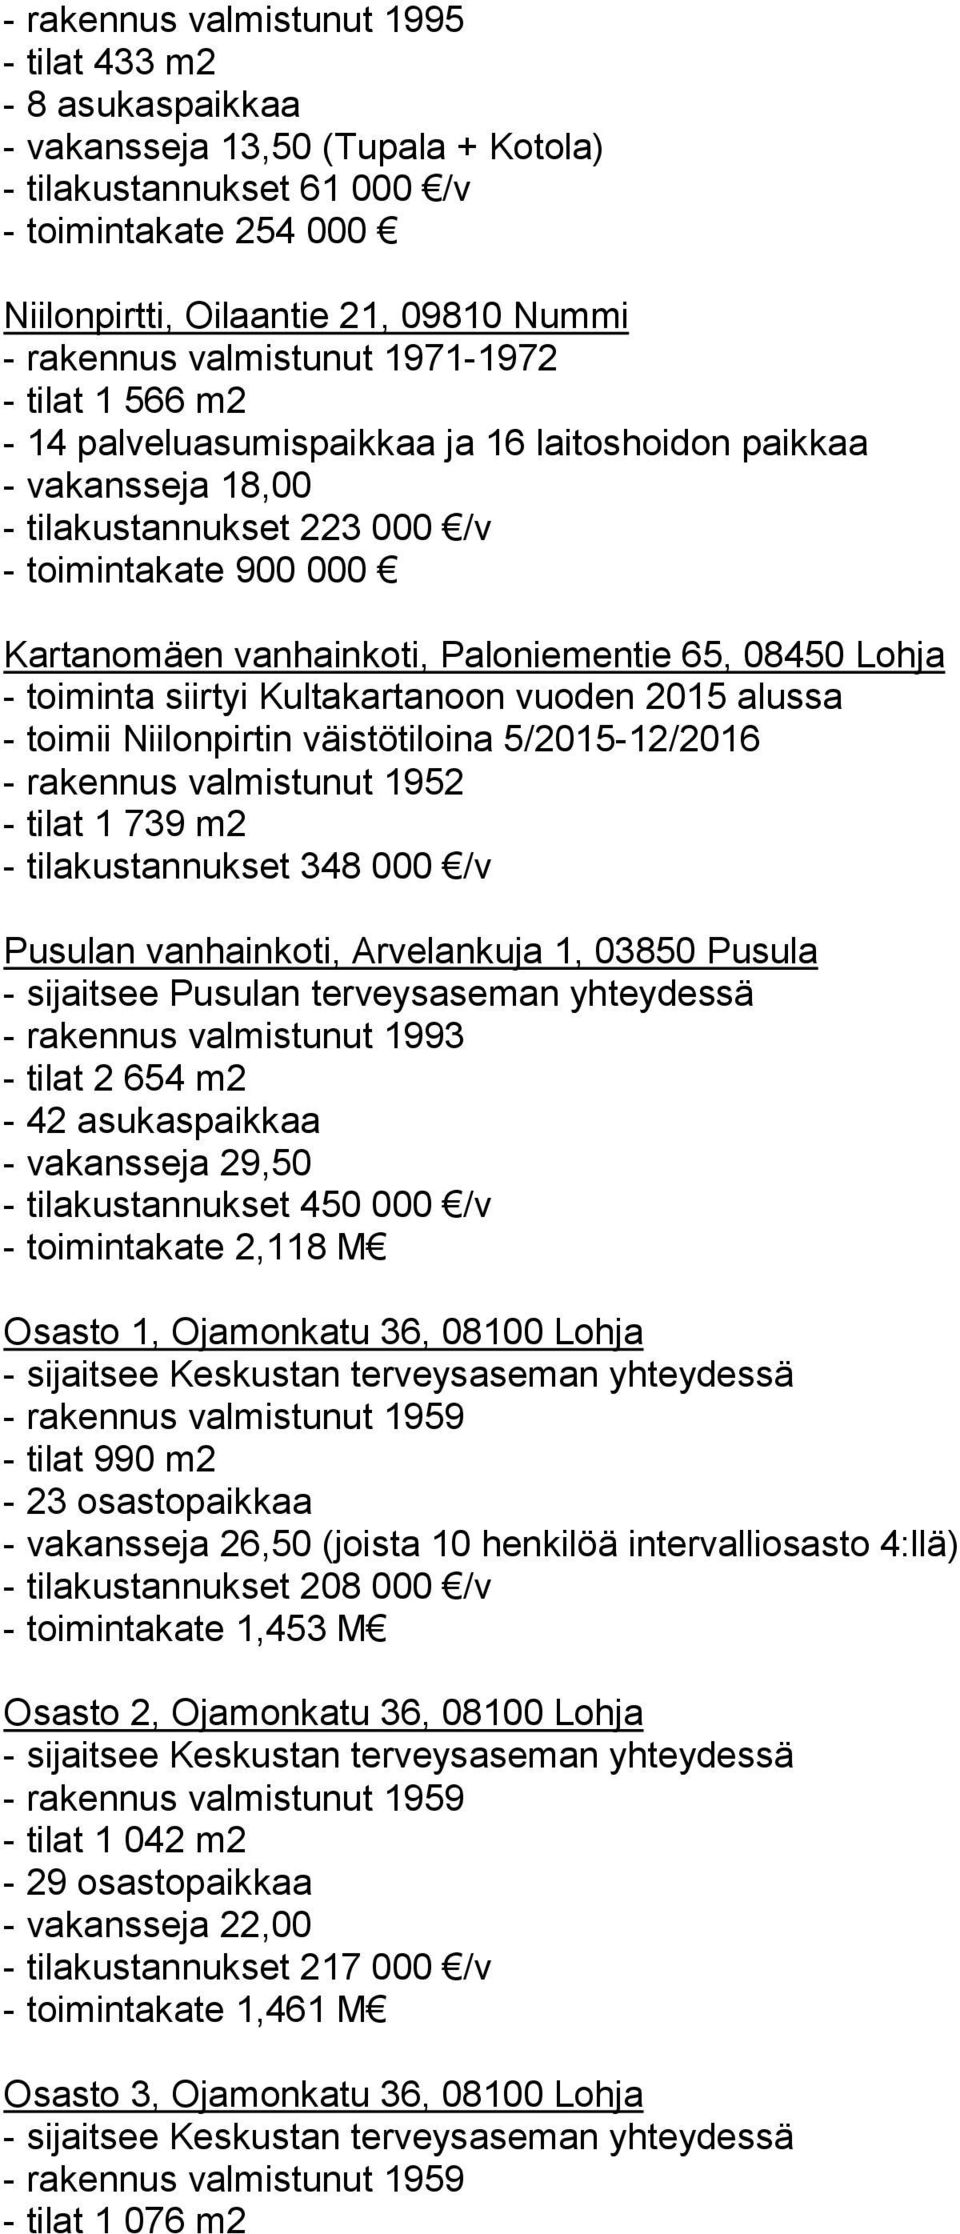 Paloniementie 65, 08450 Lohja - toiminta siirtyi Kultakartanoon vuoden 2015 alussa - toimii Niilonpirtin väistötiloina 5/2015-12/2016 - rakennus valmistunut 1952 - tilat 1 739 m2 - tilakustannukset